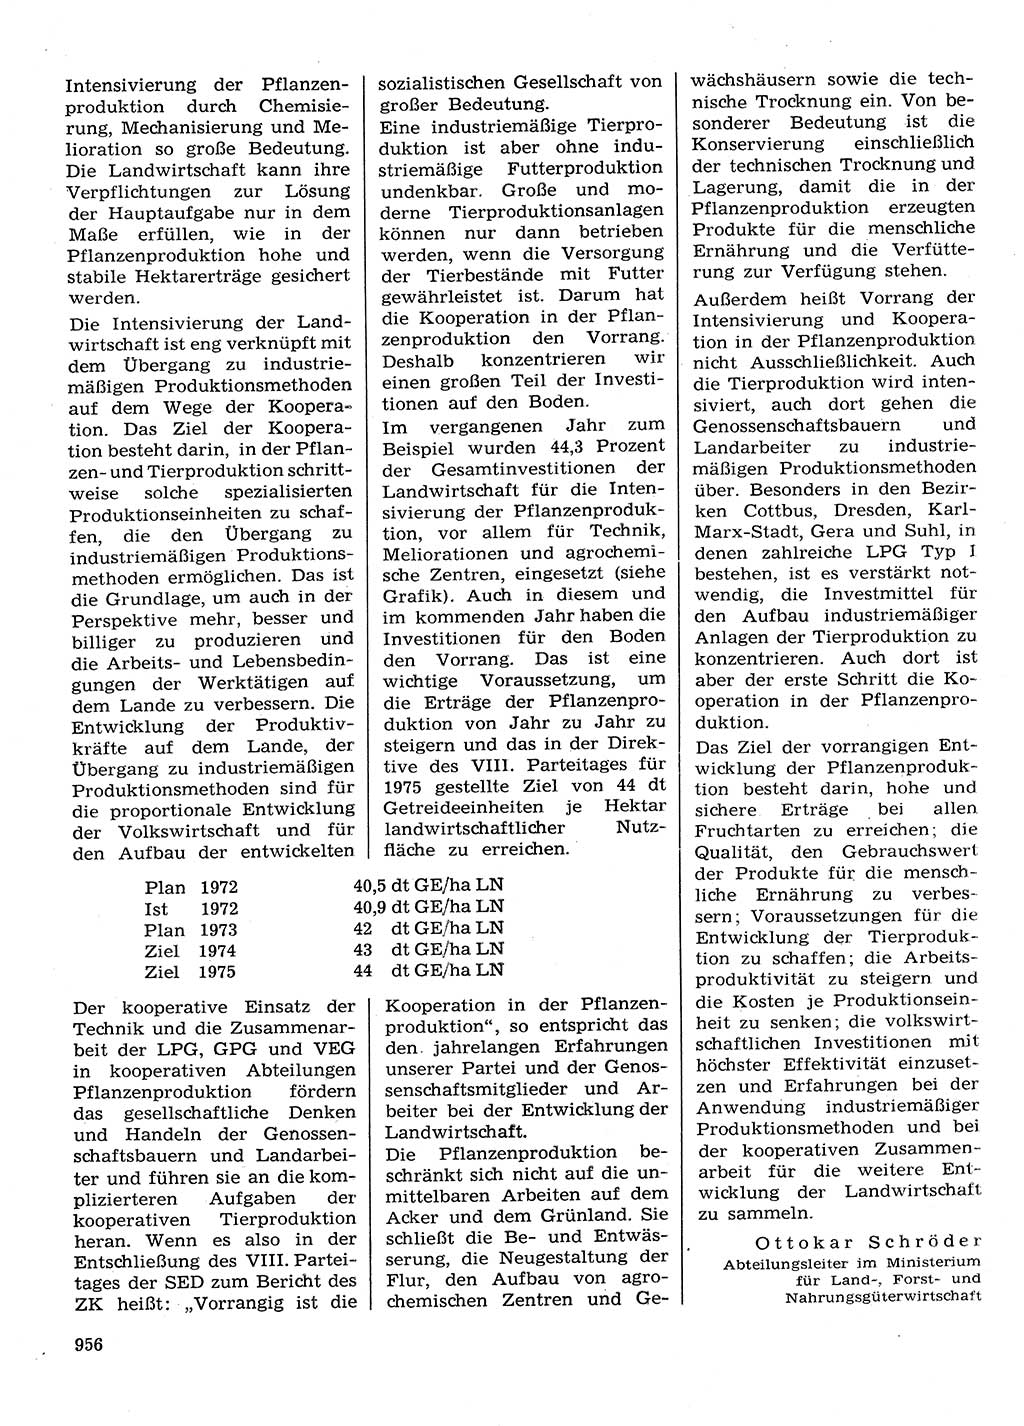 Neuer Weg (NW), Organ des Zentralkomitees (ZK) der SED (Sozialistische Einheitspartei Deutschlands) für Fragen des Parteilebens, 28. Jahrgang [Deutsche Demokratische Republik (DDR)] 1973, Seite 956 (NW ZK SED DDR 1973, S. 956)